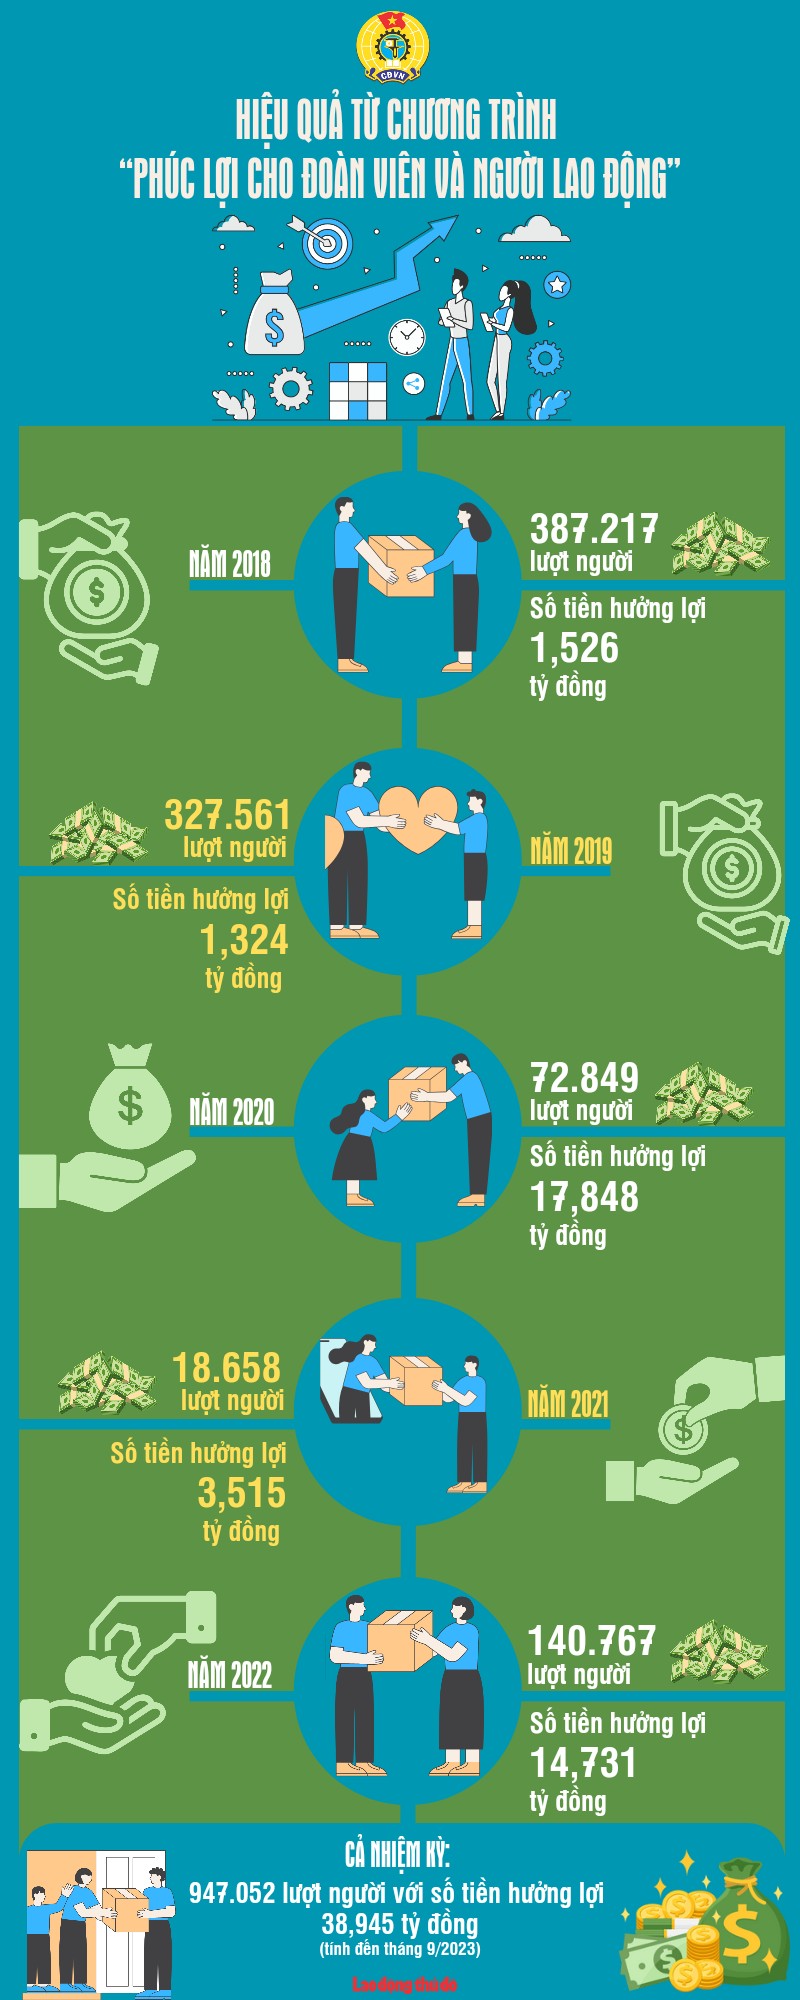 Infographic: Hiệu quả từ chương trình “Phúc lợi cho đoàn viên và người lao động”